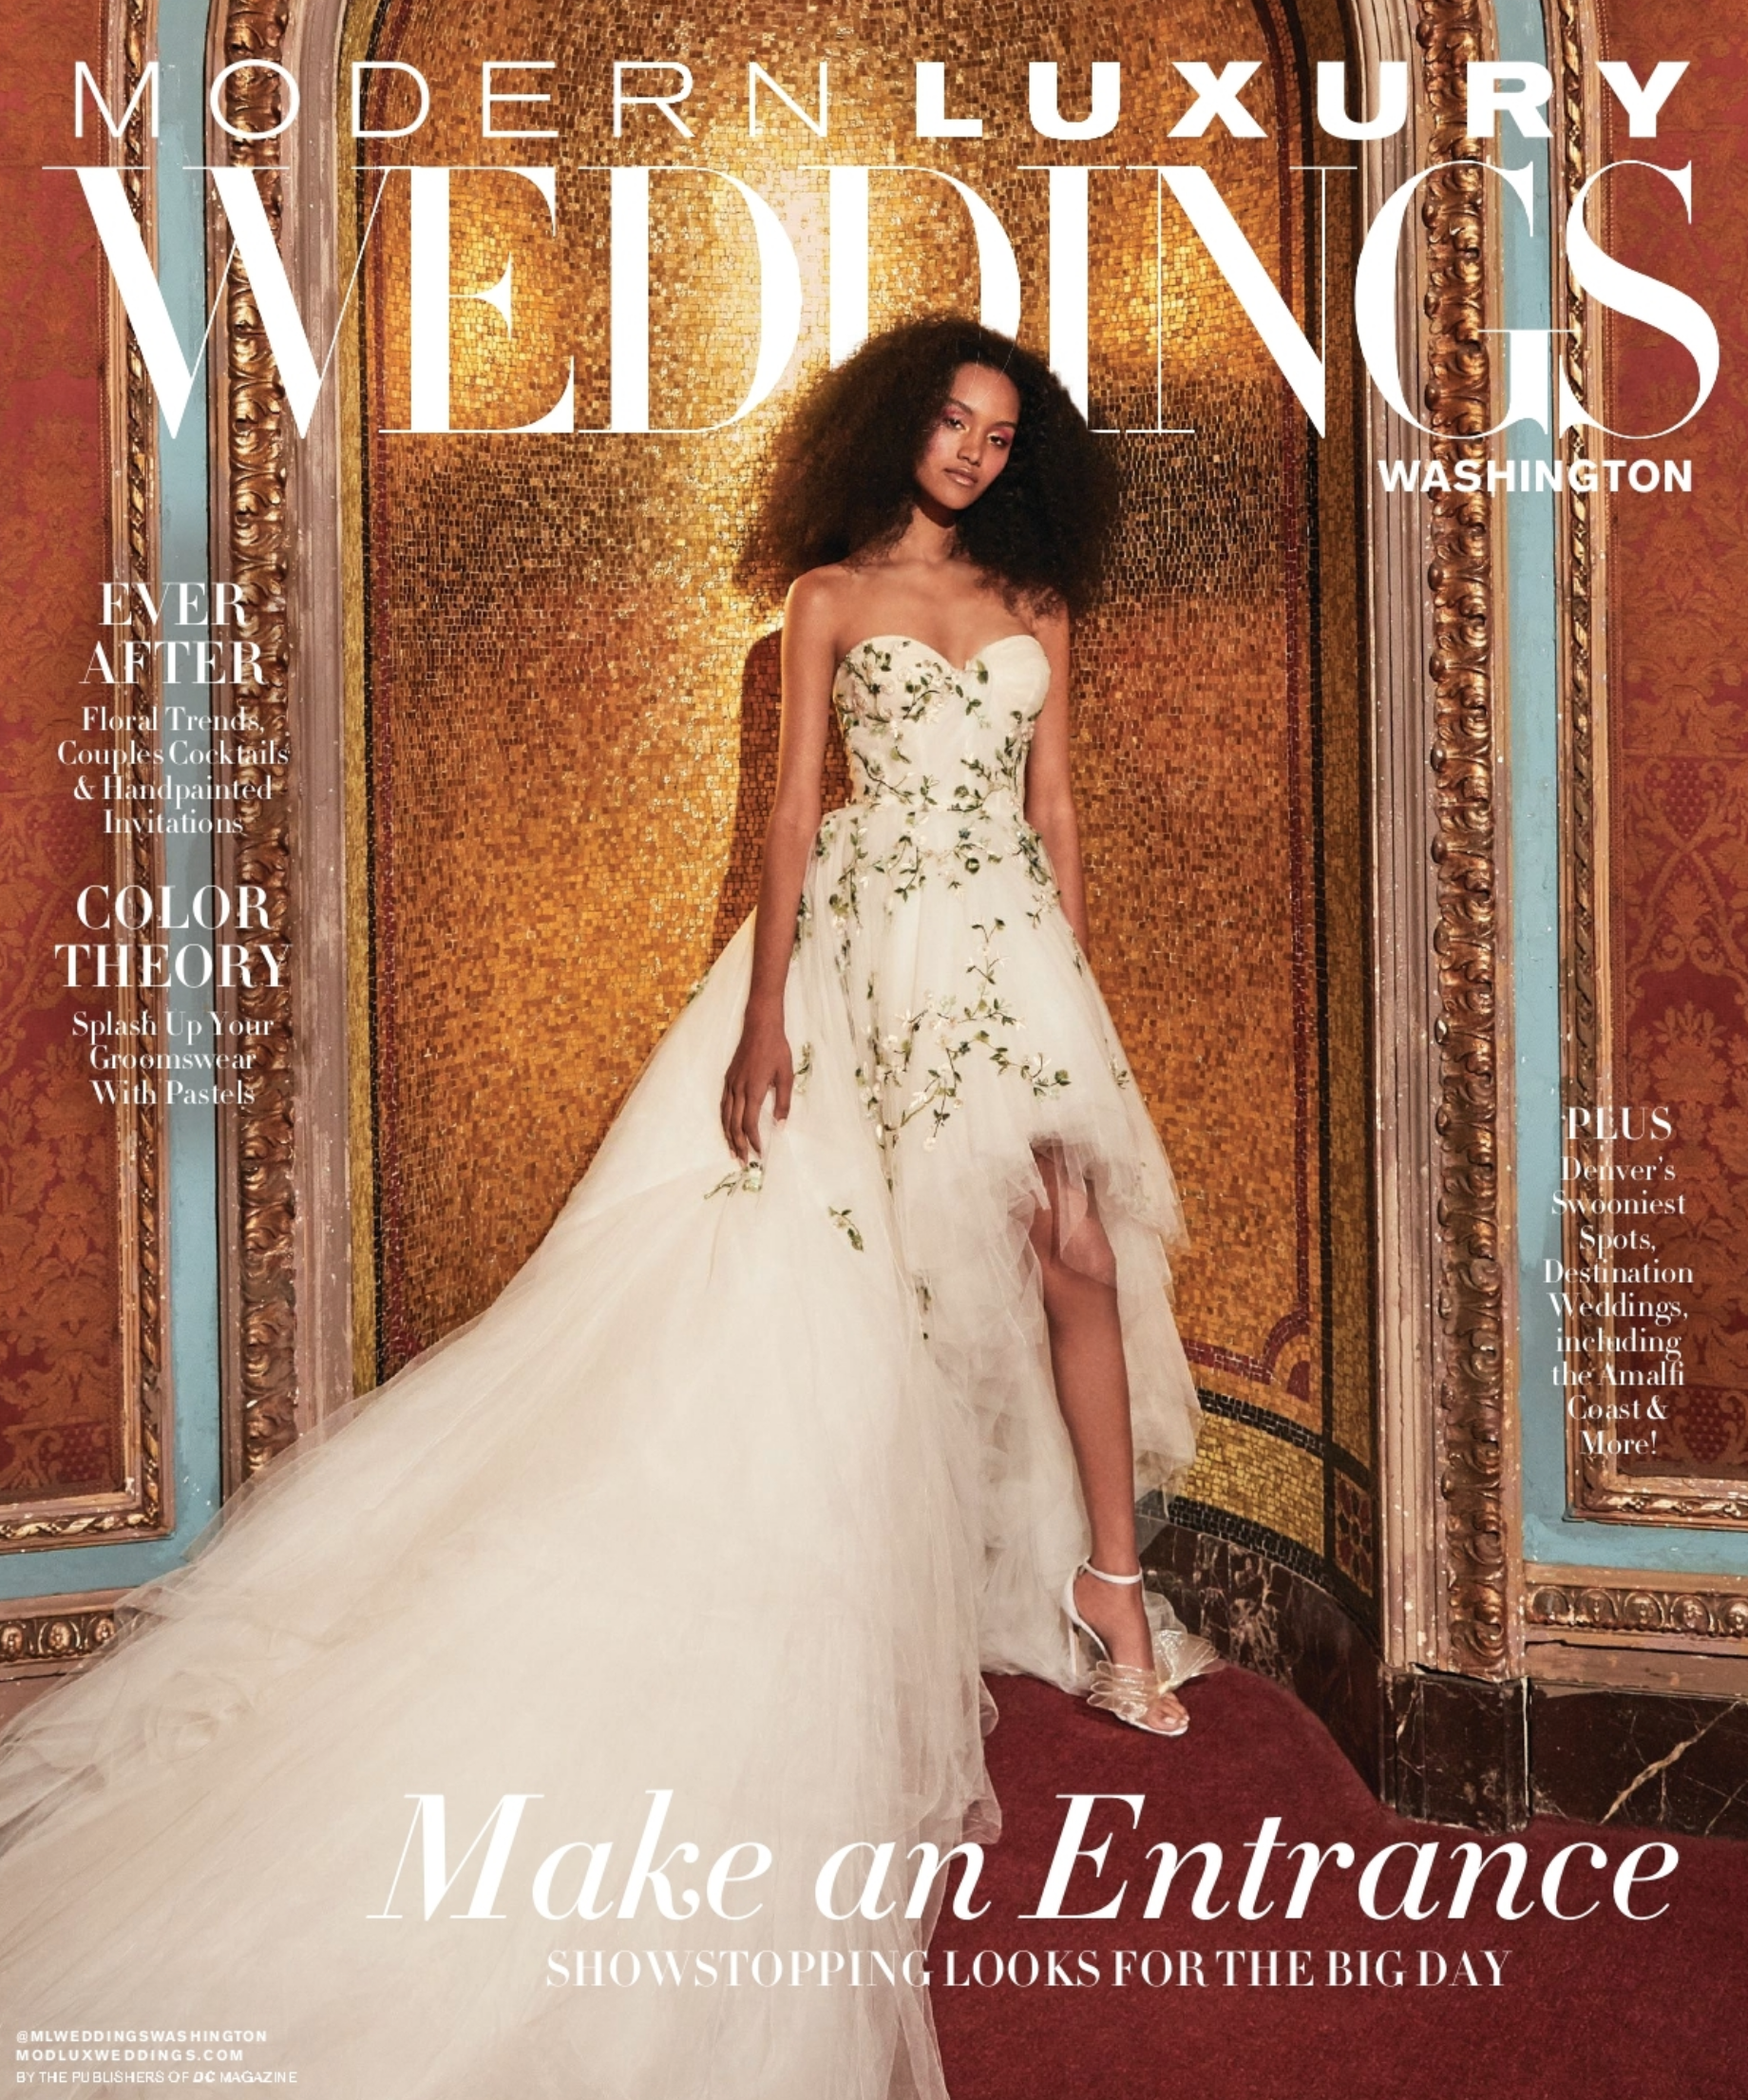 fairmont hotel washington dc wedding, modern luxury magazine cover